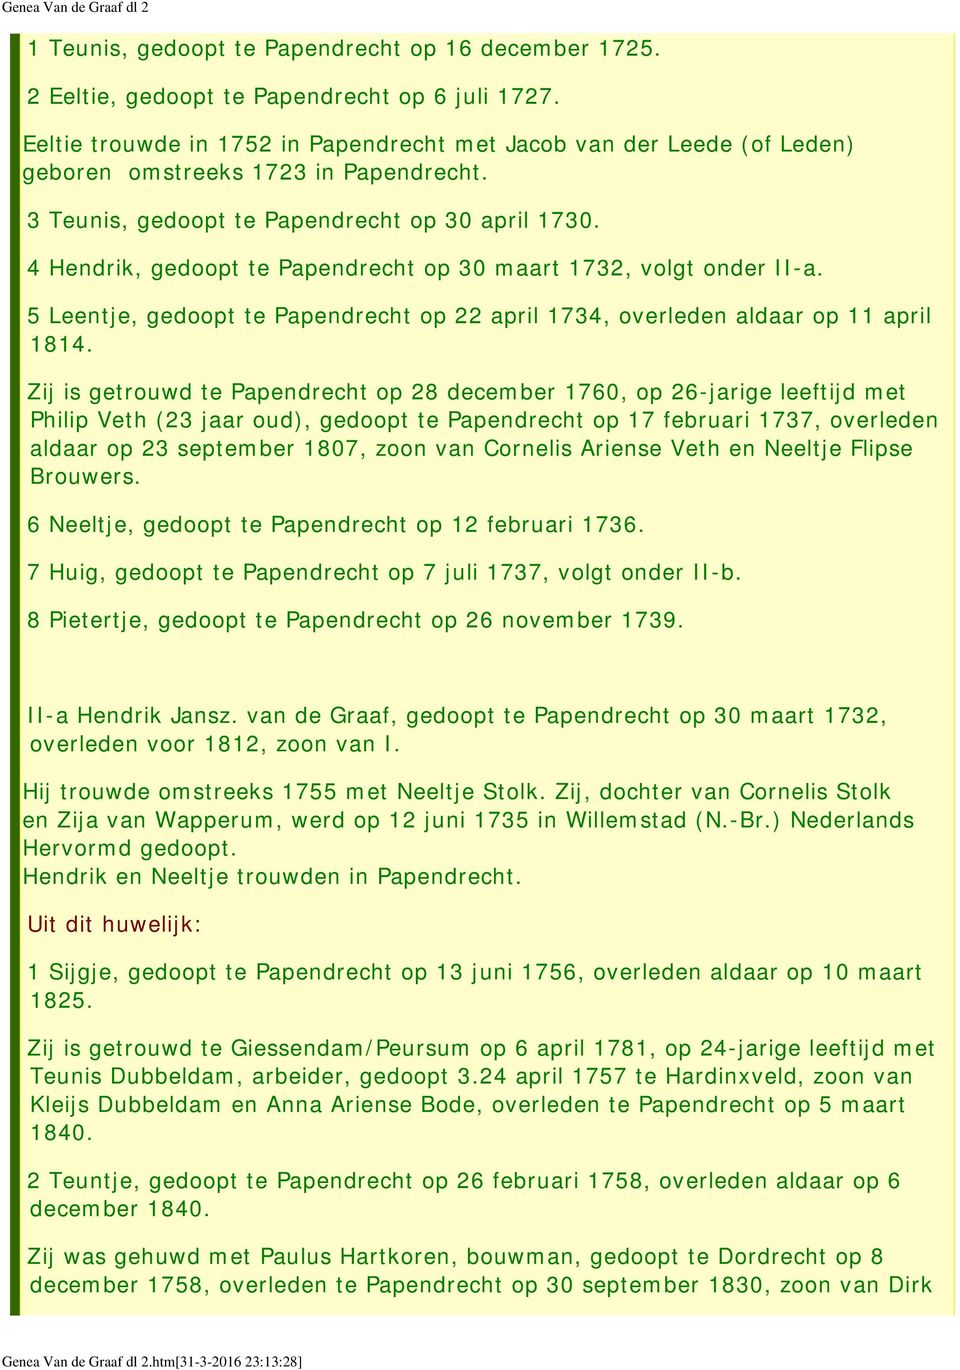 4 Hendrik, gedoopt te Papendrecht op 30 maart 1732, volgt onder II-a. 5 Leentje, gedoopt te Papendrecht op 22 april 1734, overleden aldaar op 11 april 1814.